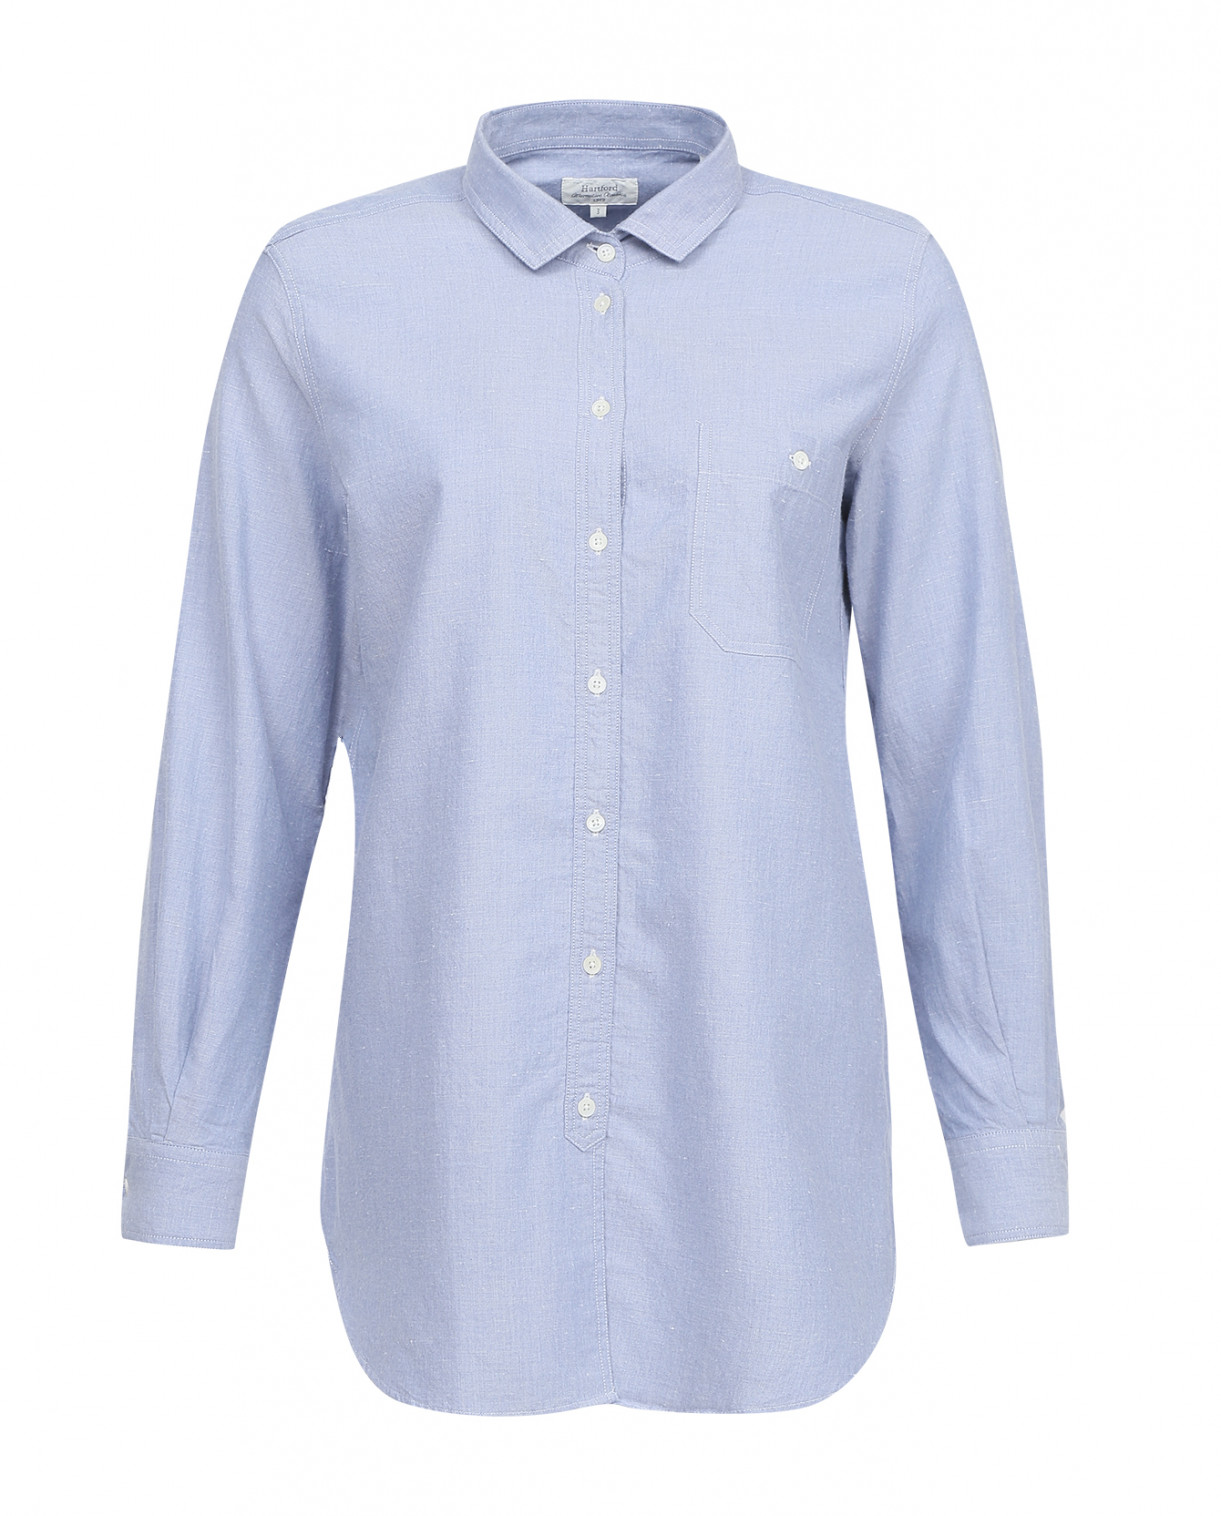 Рубашка свободного фасона из хлопка Hartford  –  Общий вид  – Цвет:  Синий